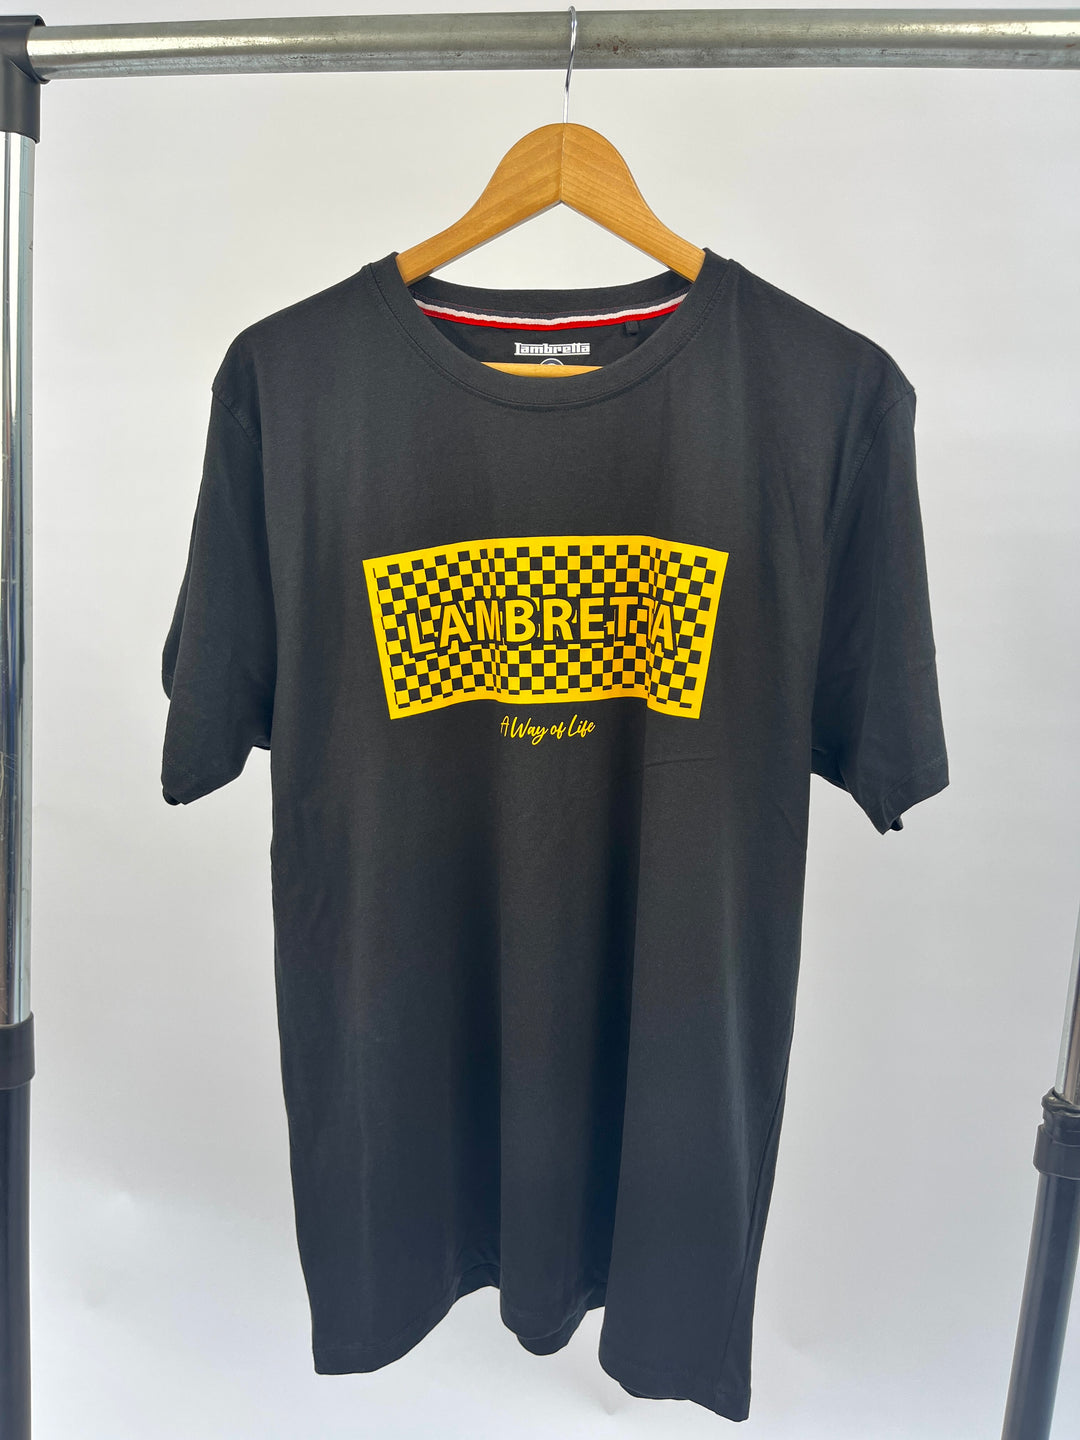 Lambretta text print t-shirt